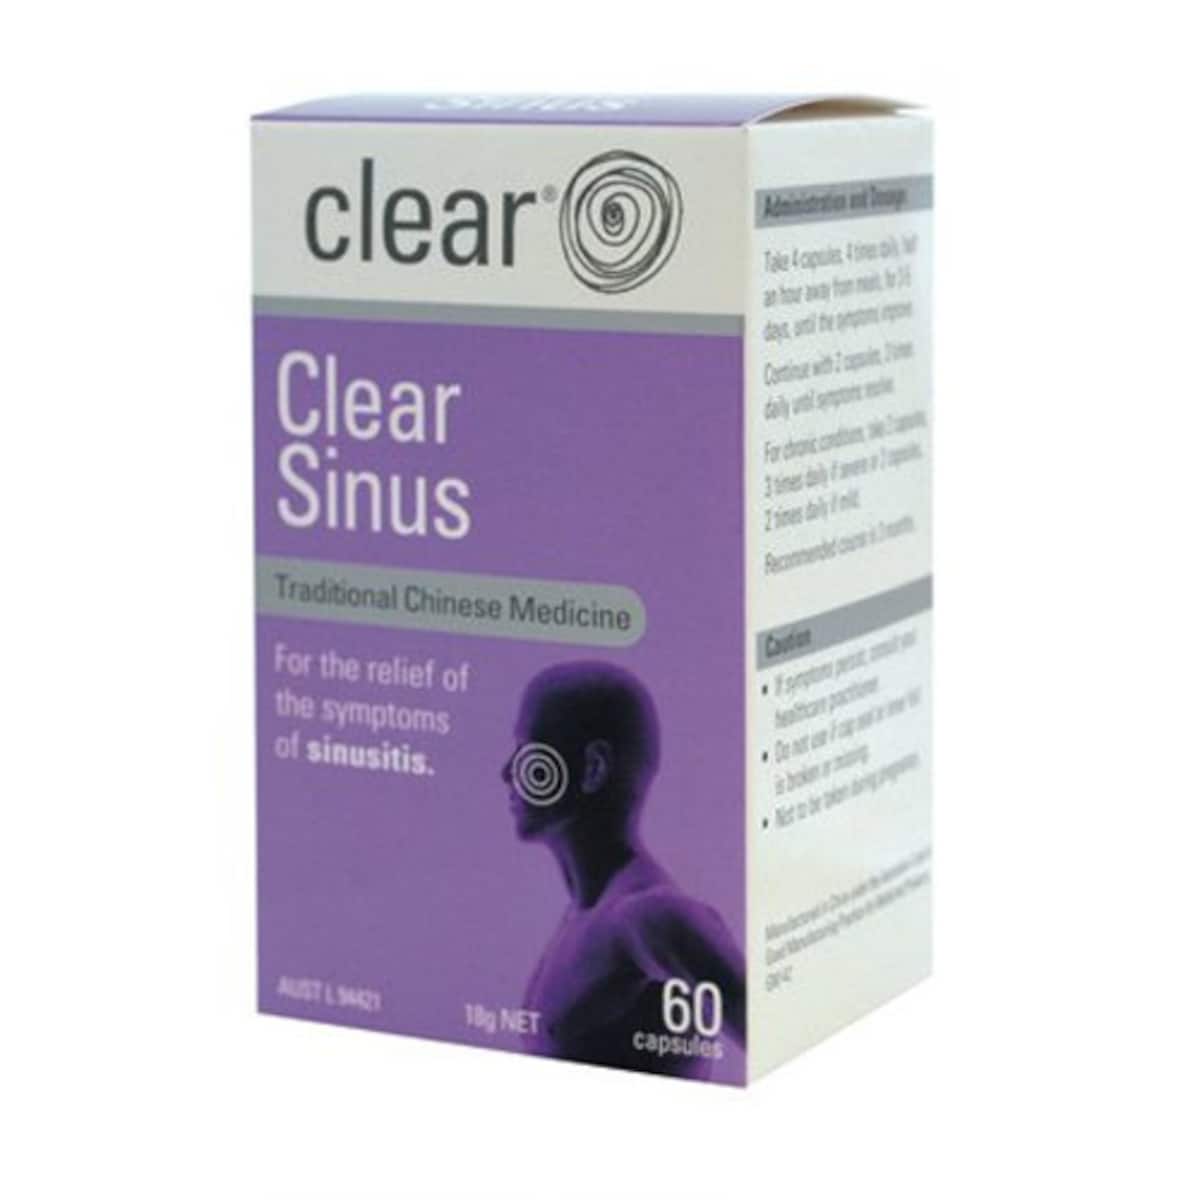 Clear Sinus 60 Capsules